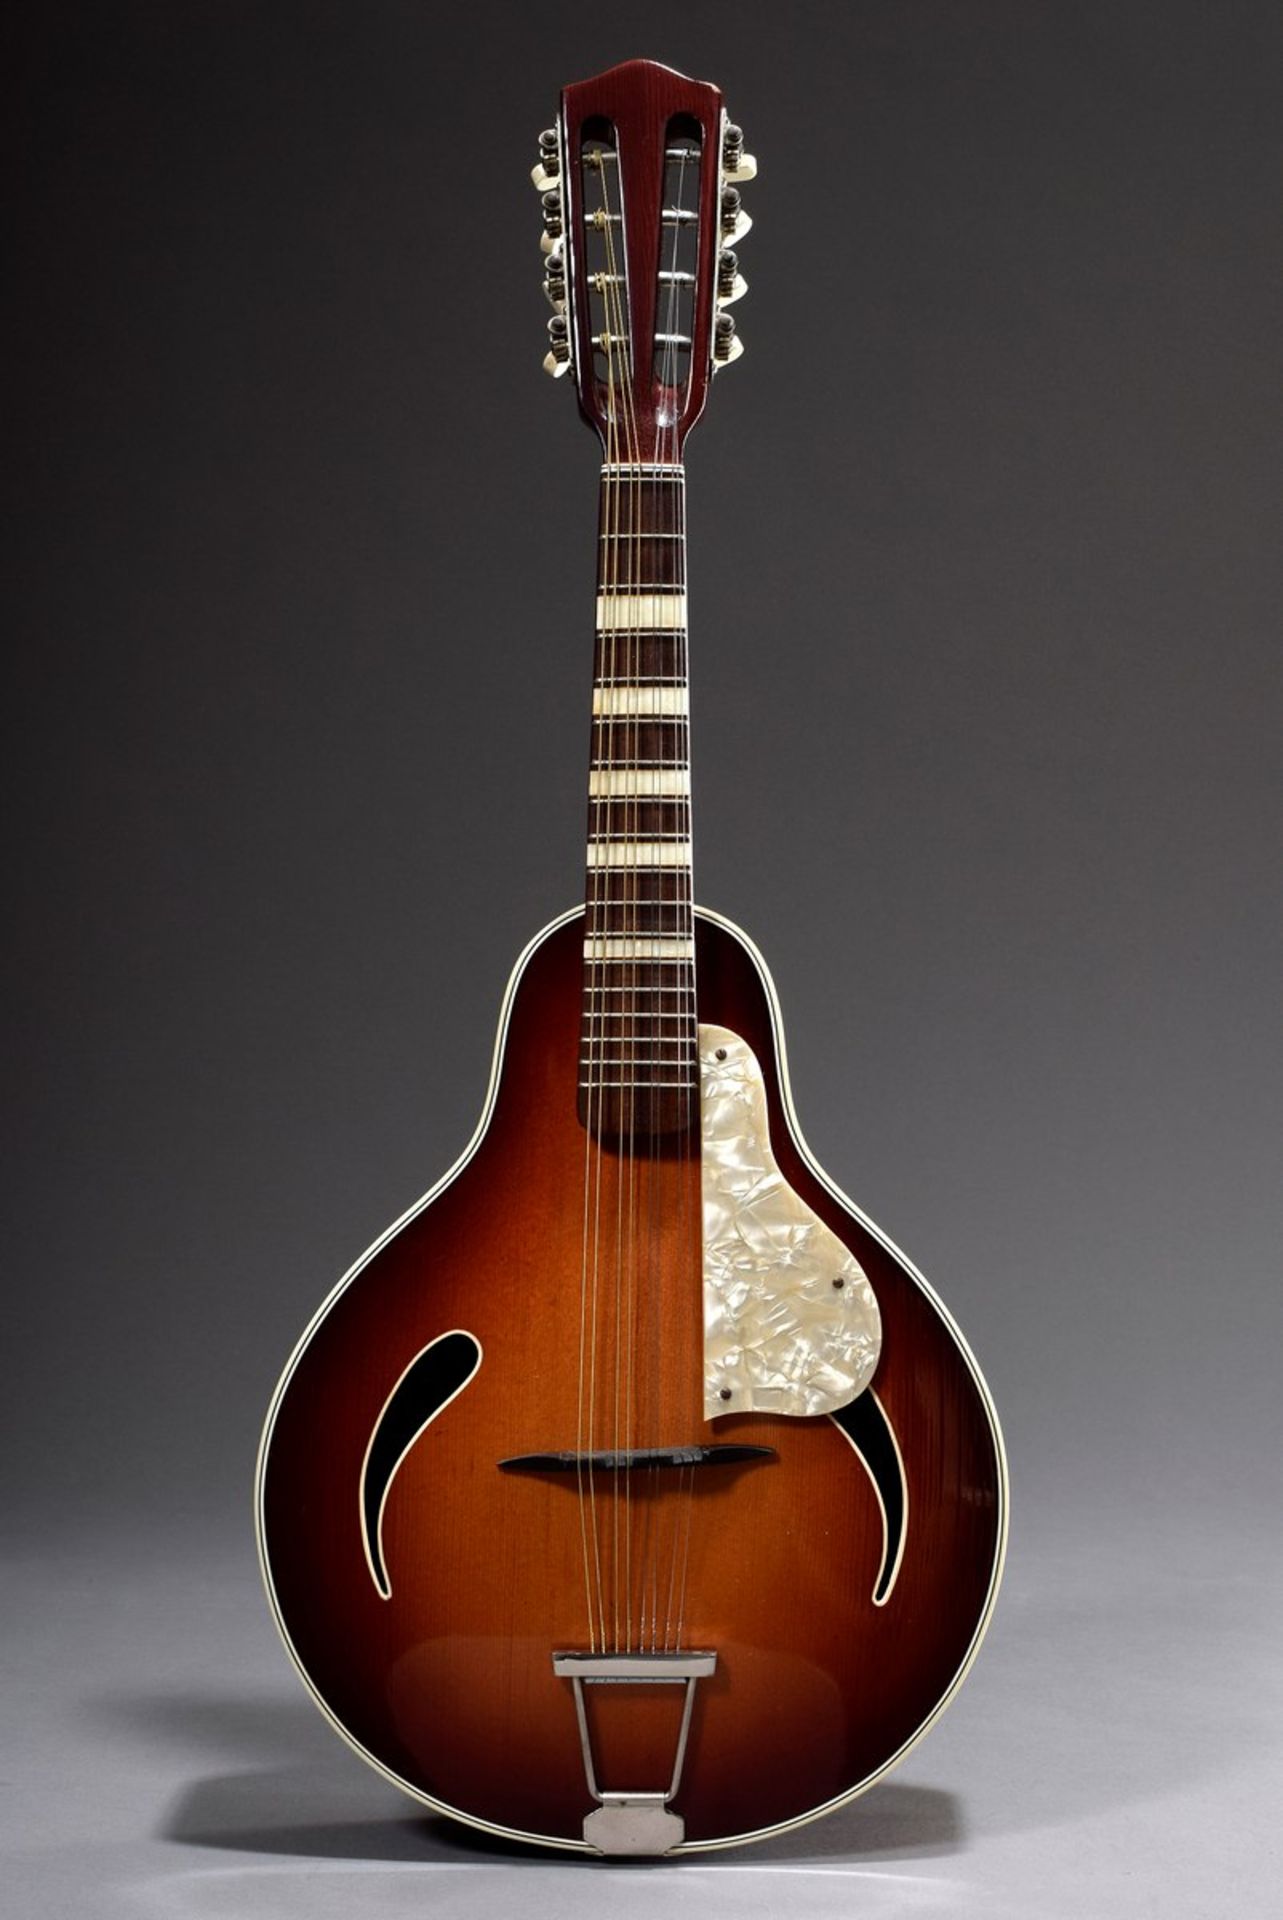 Jazz Mandoline "Cat Eye" von Höfner, Modell 542, um 1950/60, Korpuslänge 33cm, Gesamtlänge 63,5cm, - Bild 2 aus 10